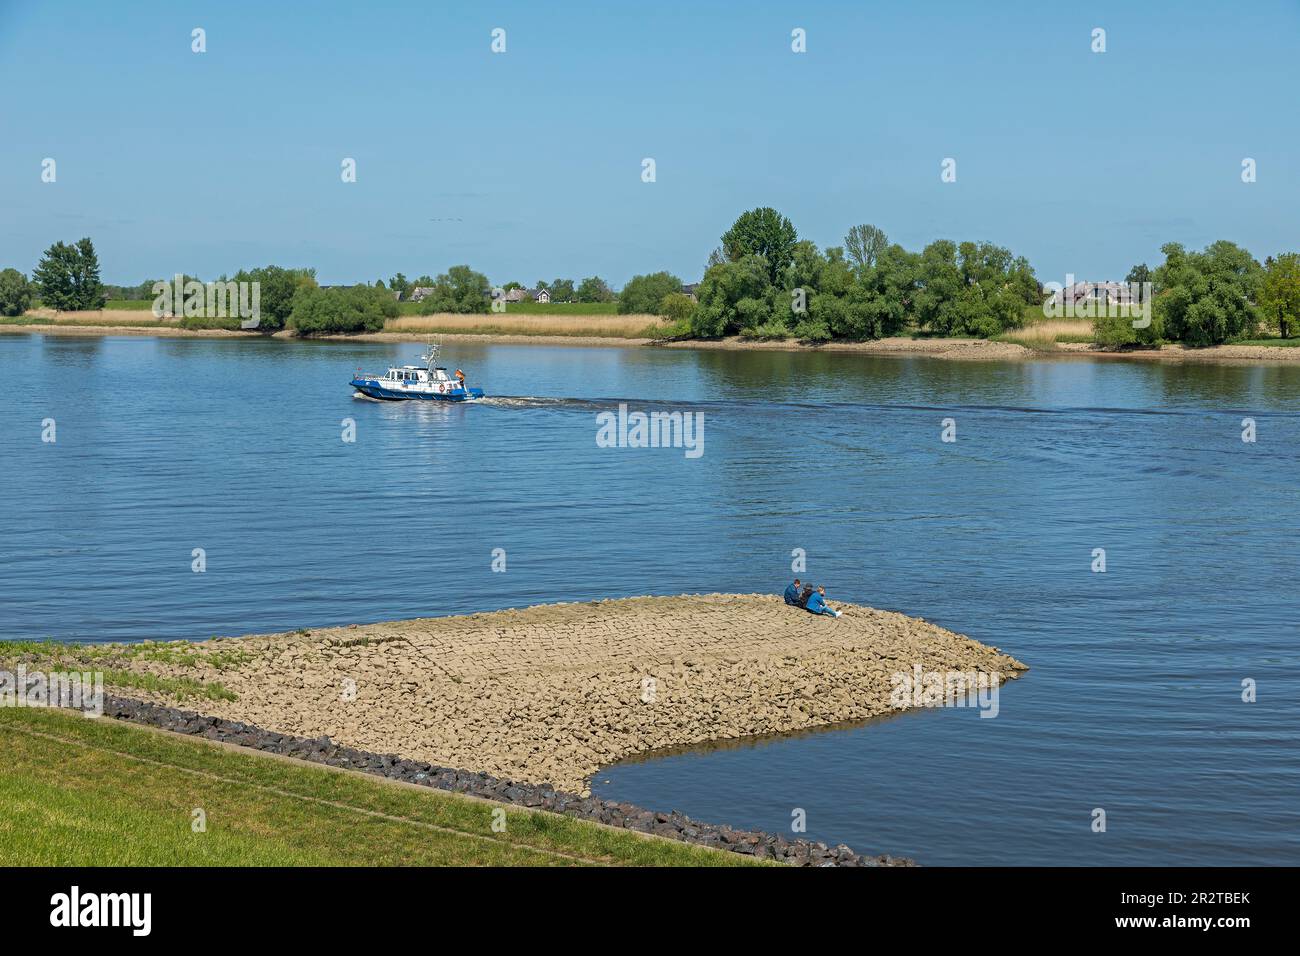 Personnes, bateau, groin, rivière Elbe, Hoopte, Winsen (Luhe), Basse-Saxe, de l'autre côté de la rivière se trouve Zollenspieker, Hambourg, Allemagne Banque D'Images